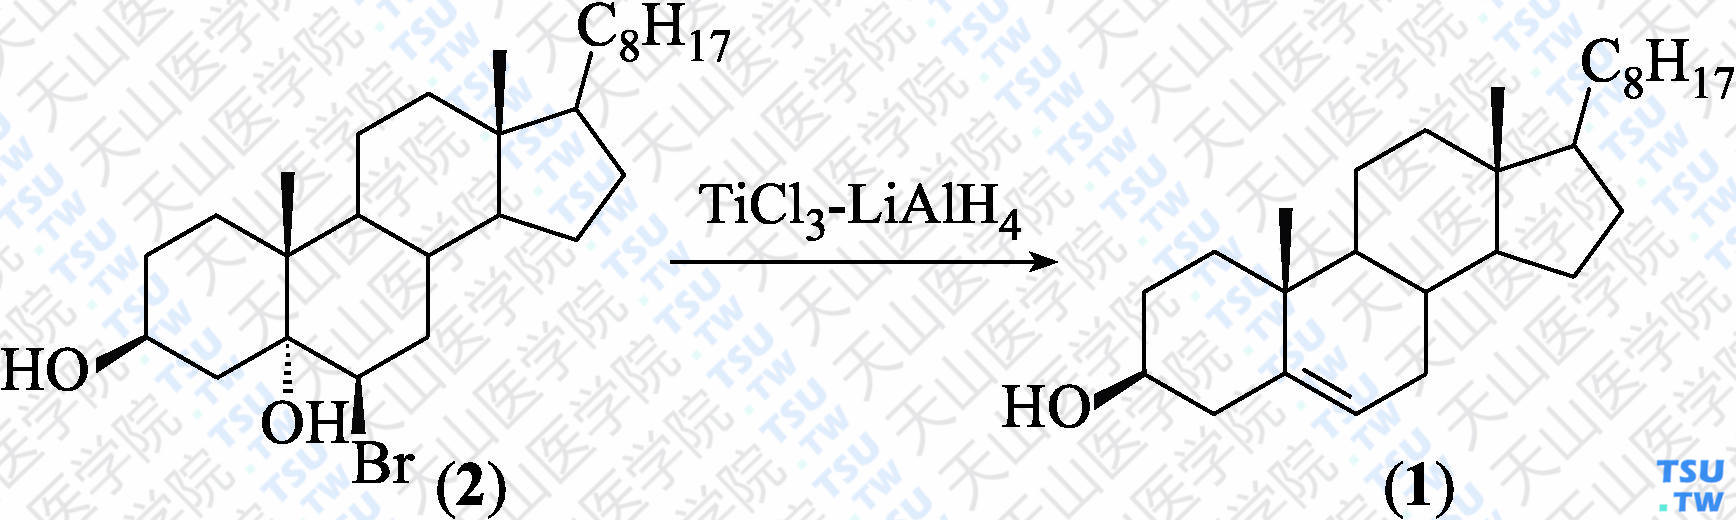 胆固醇（分子式：C<sub>27</sub>H<sub>46</sub>O）的合成方法路线及其结构式